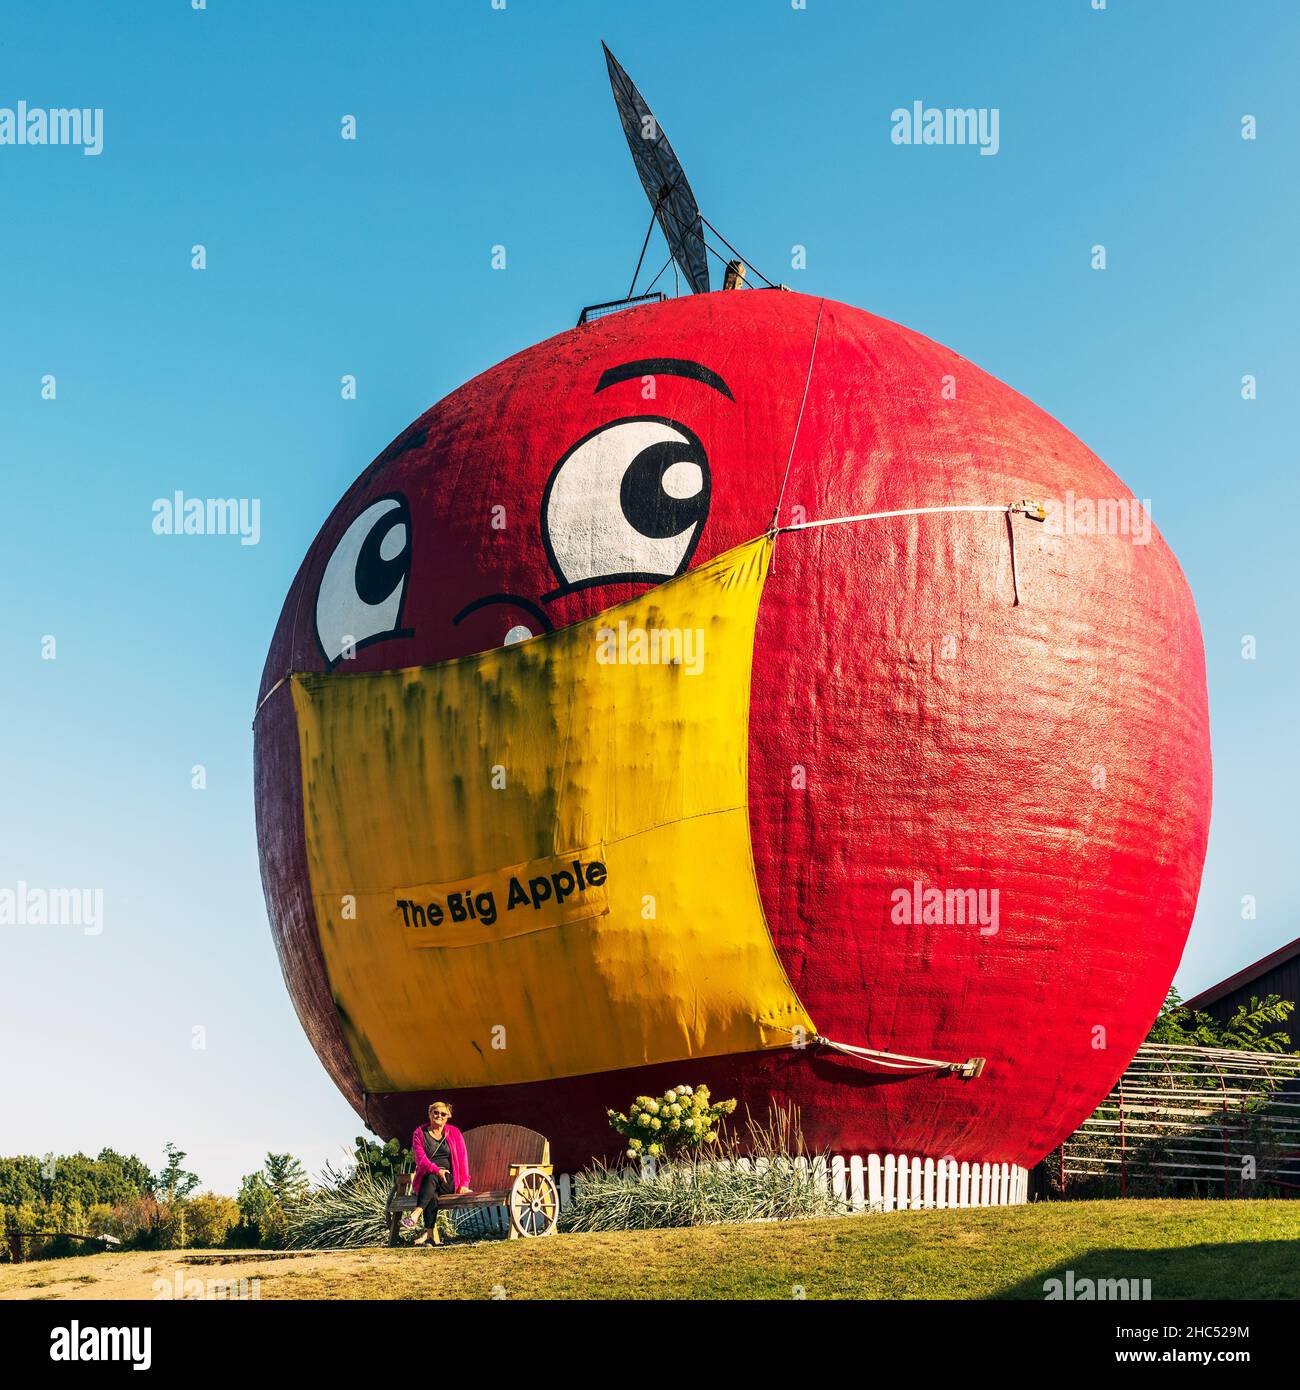 Colborne, Kanada - 7. September 2021: Big Apple die Attraktion am Straßenrand in Colborne, Ontario, liegt an der Südseite des Ontario Highway 401. Große Apfelstr Stockfoto